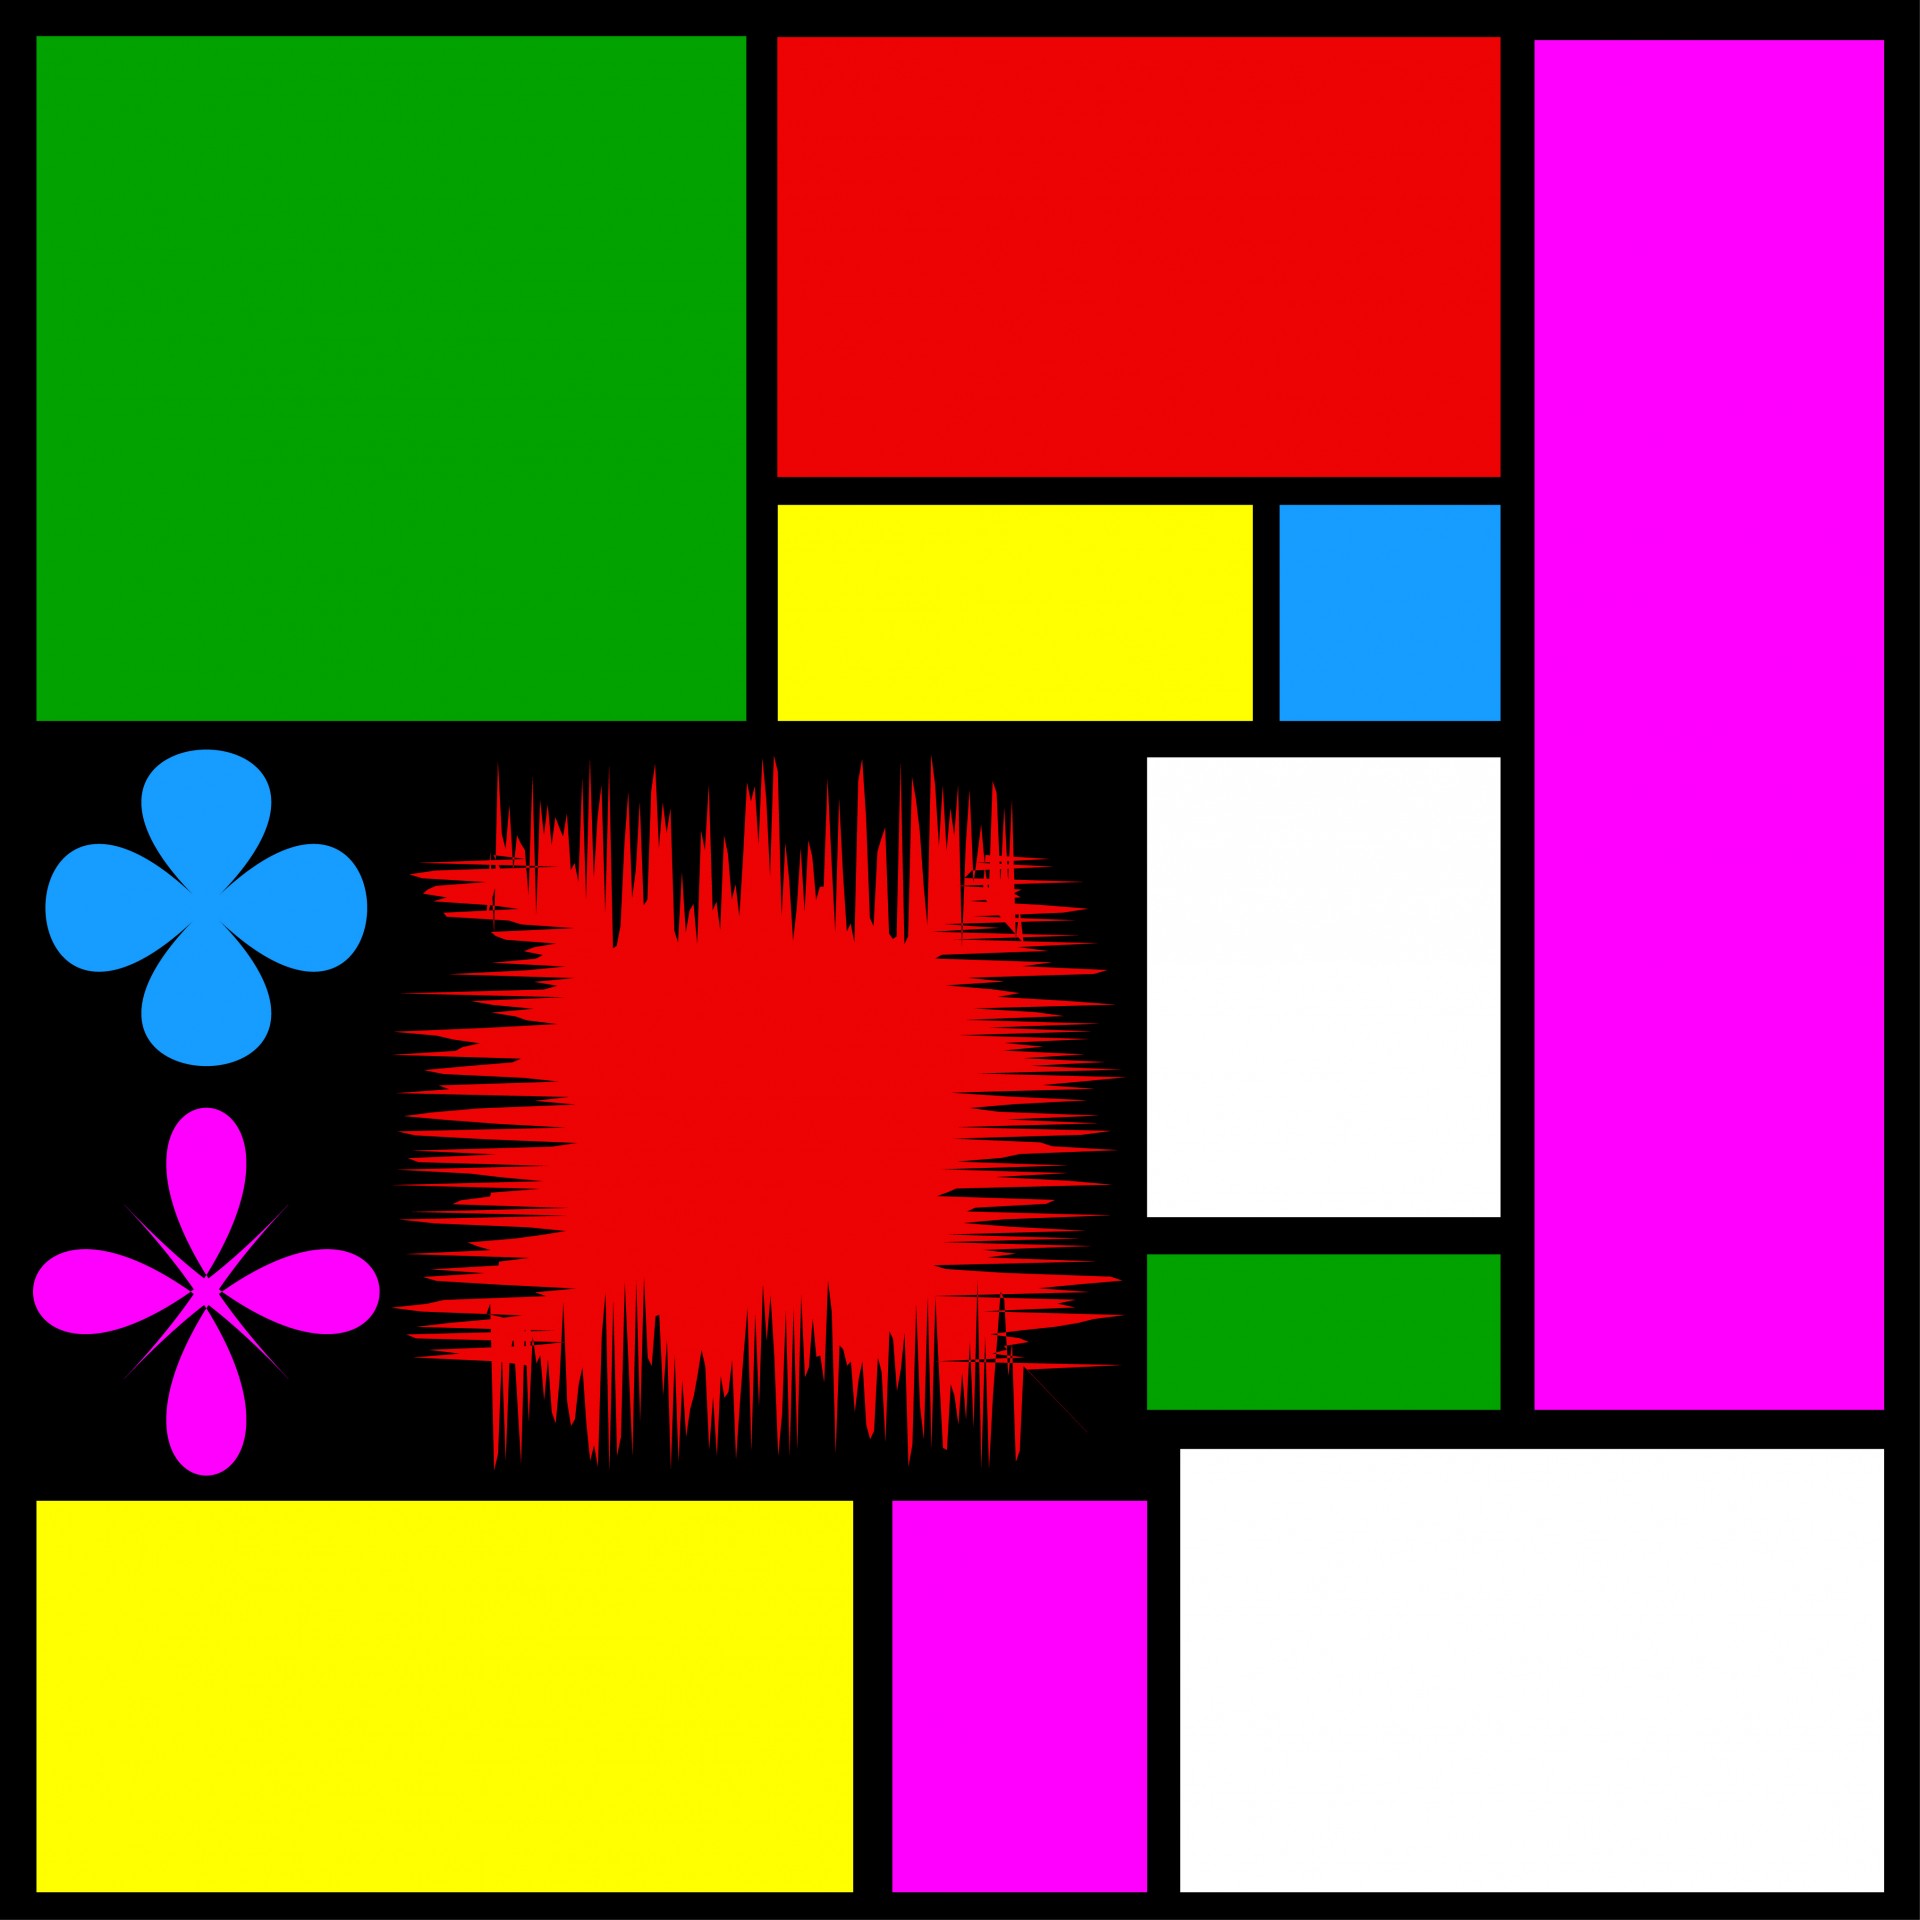 La imagen muestra un conjunto de figuras de diferentes colores